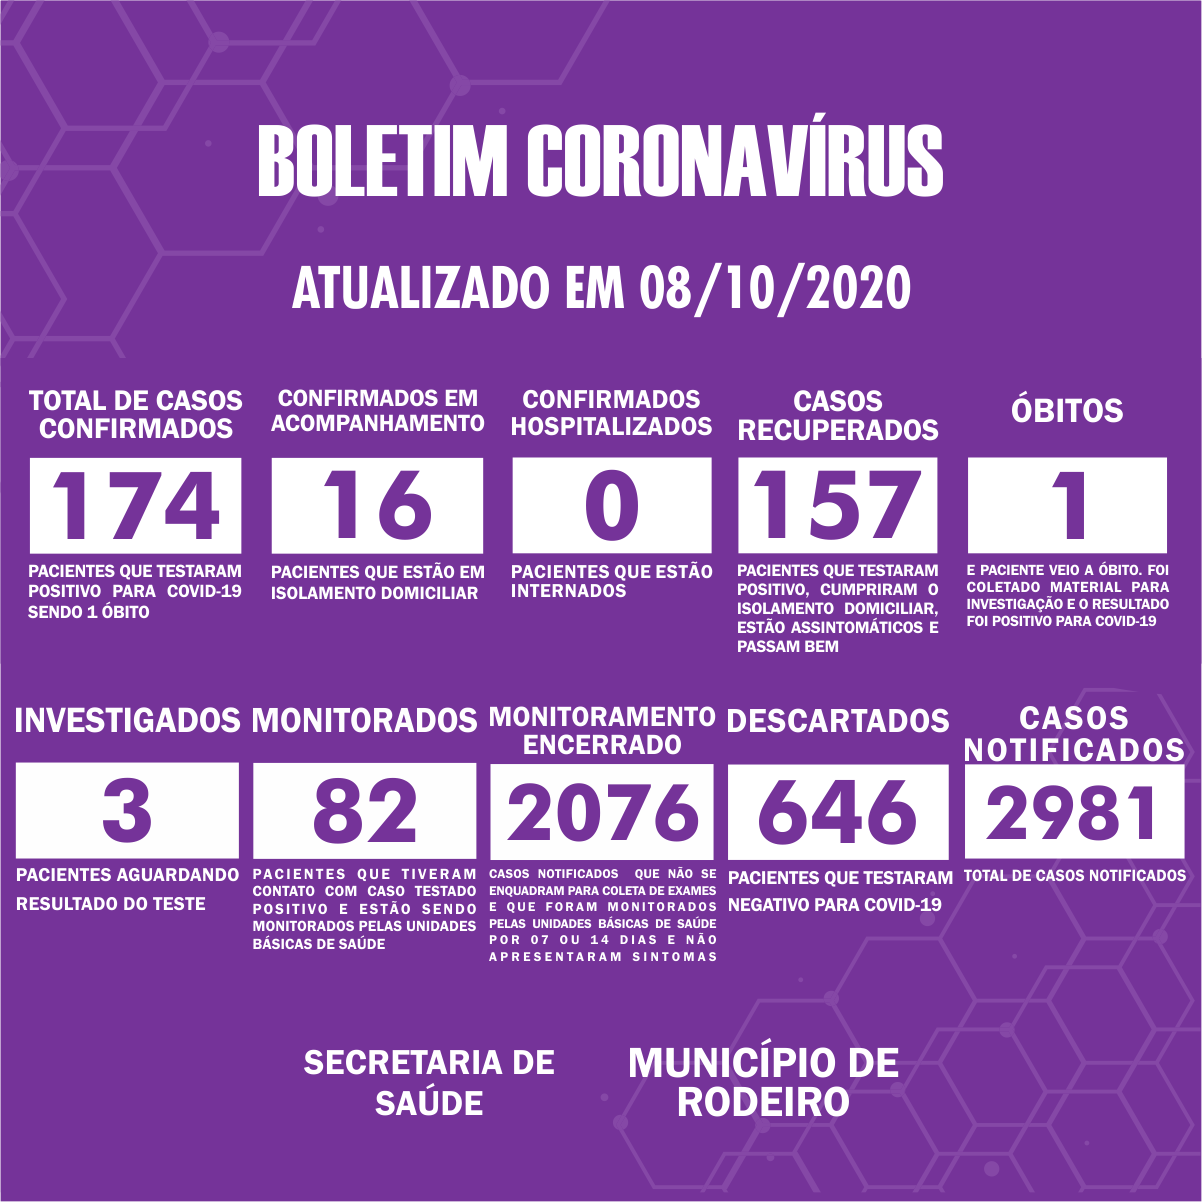 Boletim Epidemiológico do Município de Rodeiro sobre coronavírus, atualizado em 08/10/2020